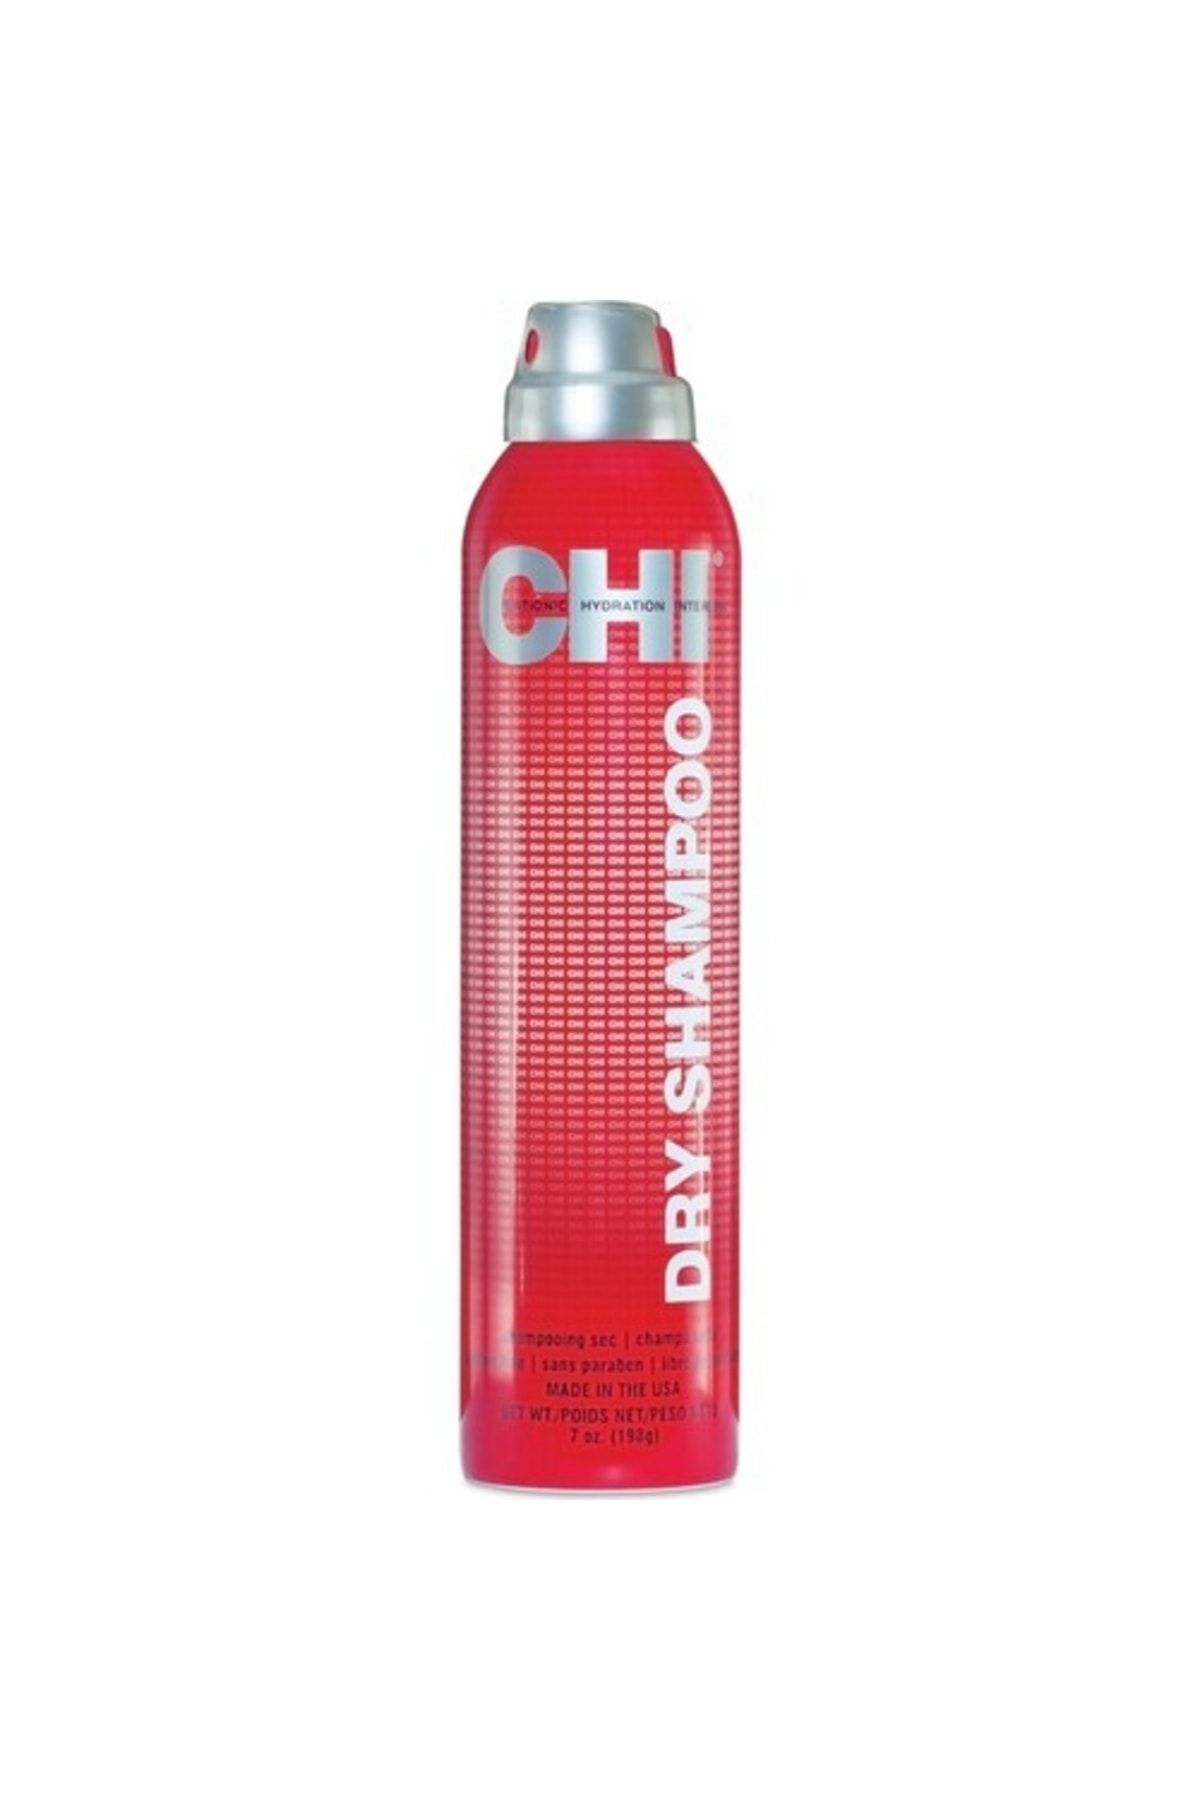 Chi Dry Ferahlatıcı Ve Şekillendirici Kuru Şampuan 198 gr 633911761052